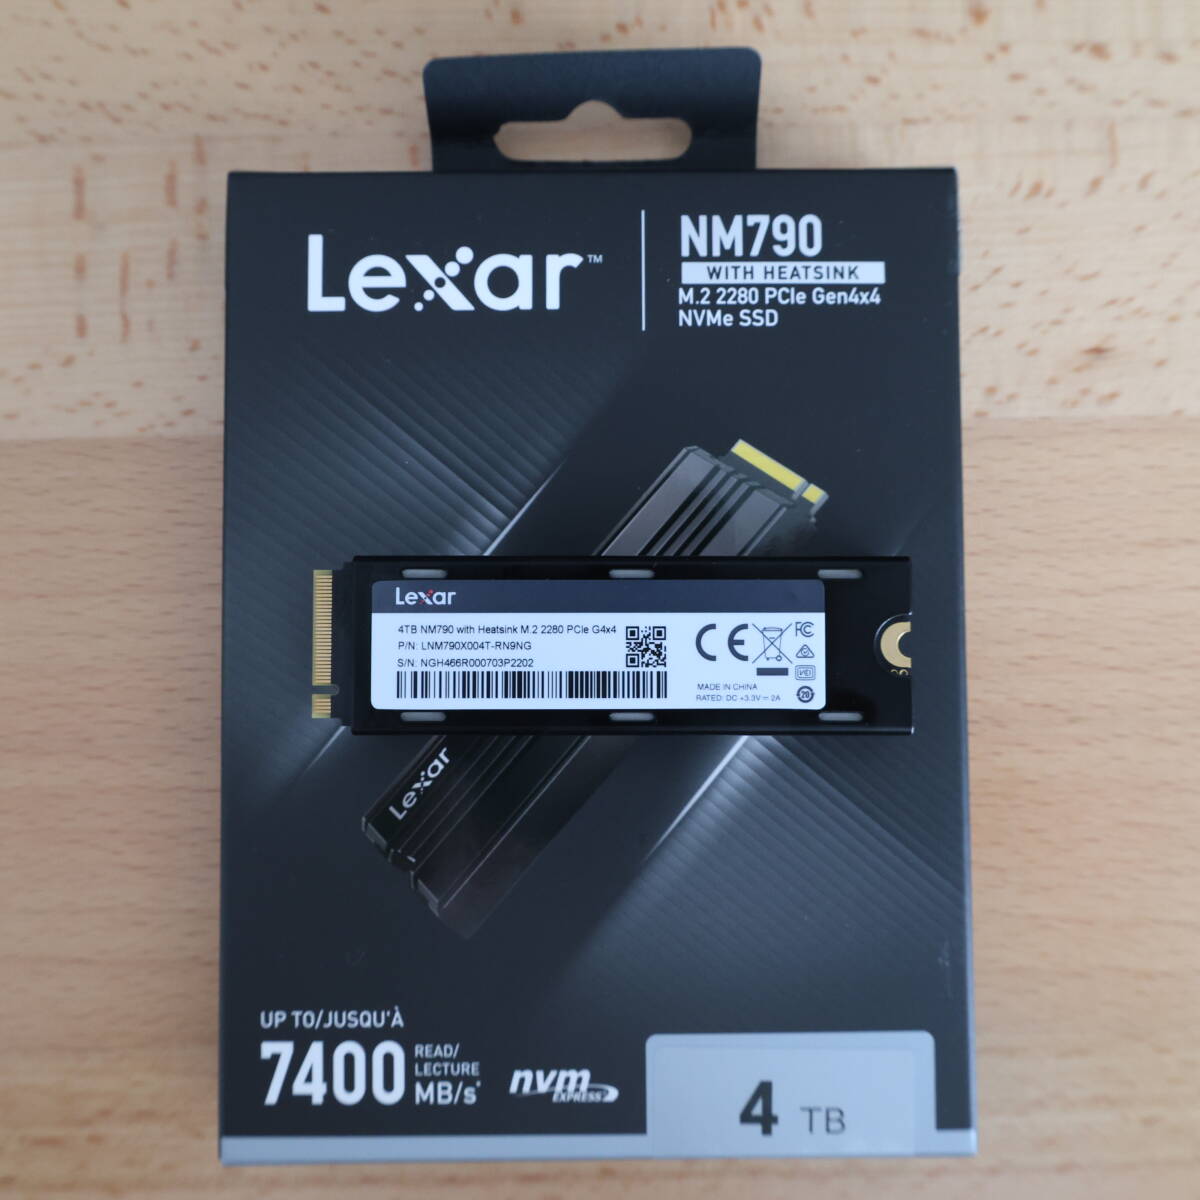 Lexar built-in SSD 4TB NM790 heat sink attaching M.2 2280 PCle Gen4×4 NVMe almost unused ③